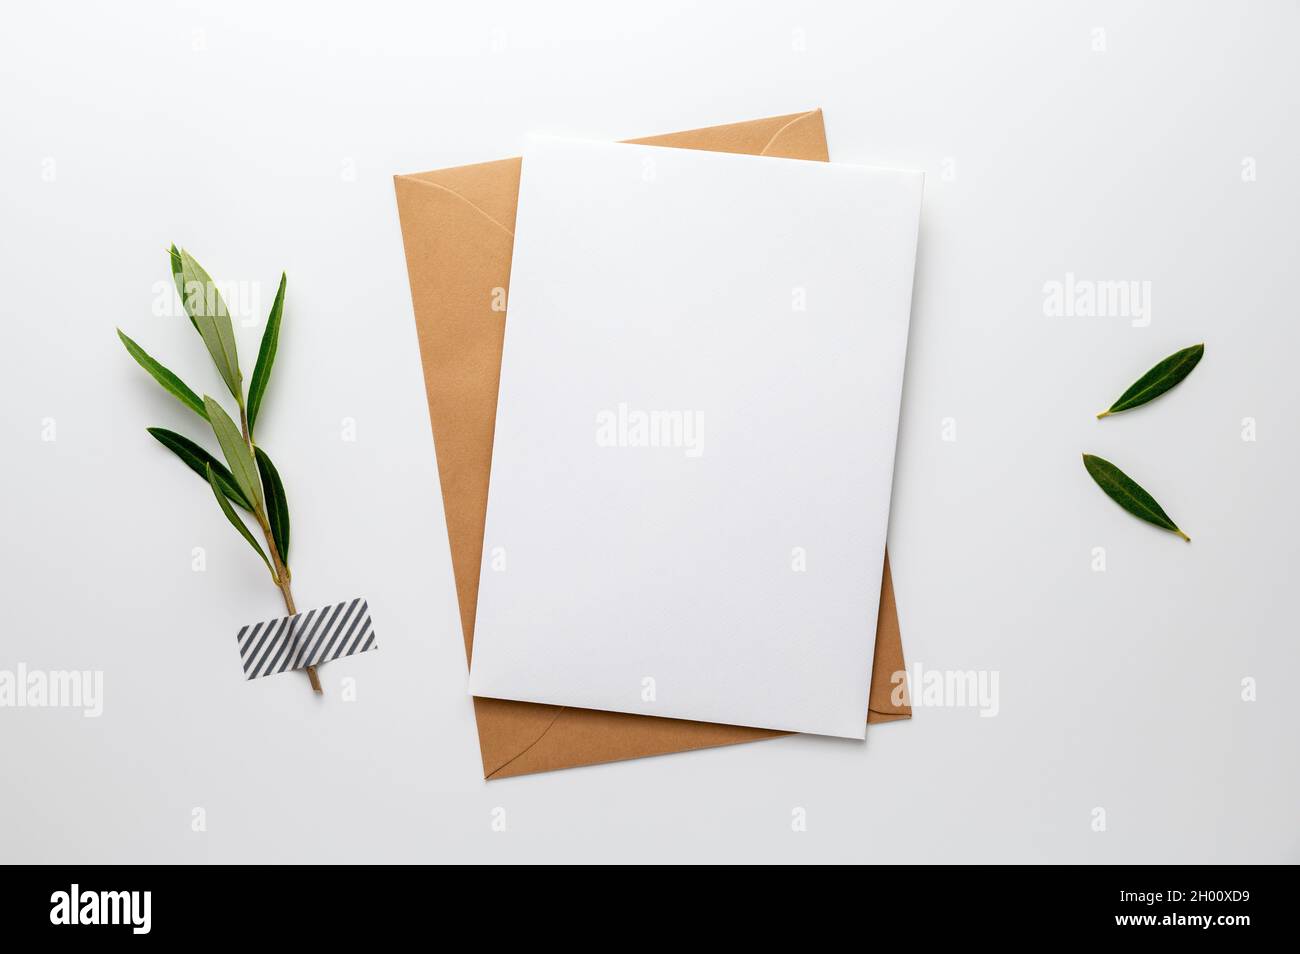 Leere Grußkarte, Einladung, Glückwunschkarte oder Kondolenzkarte, ein grüner Olivenzweig, auf einem weißen Schreibtisch mit Washi-Klebeband befestigt. Stockfoto